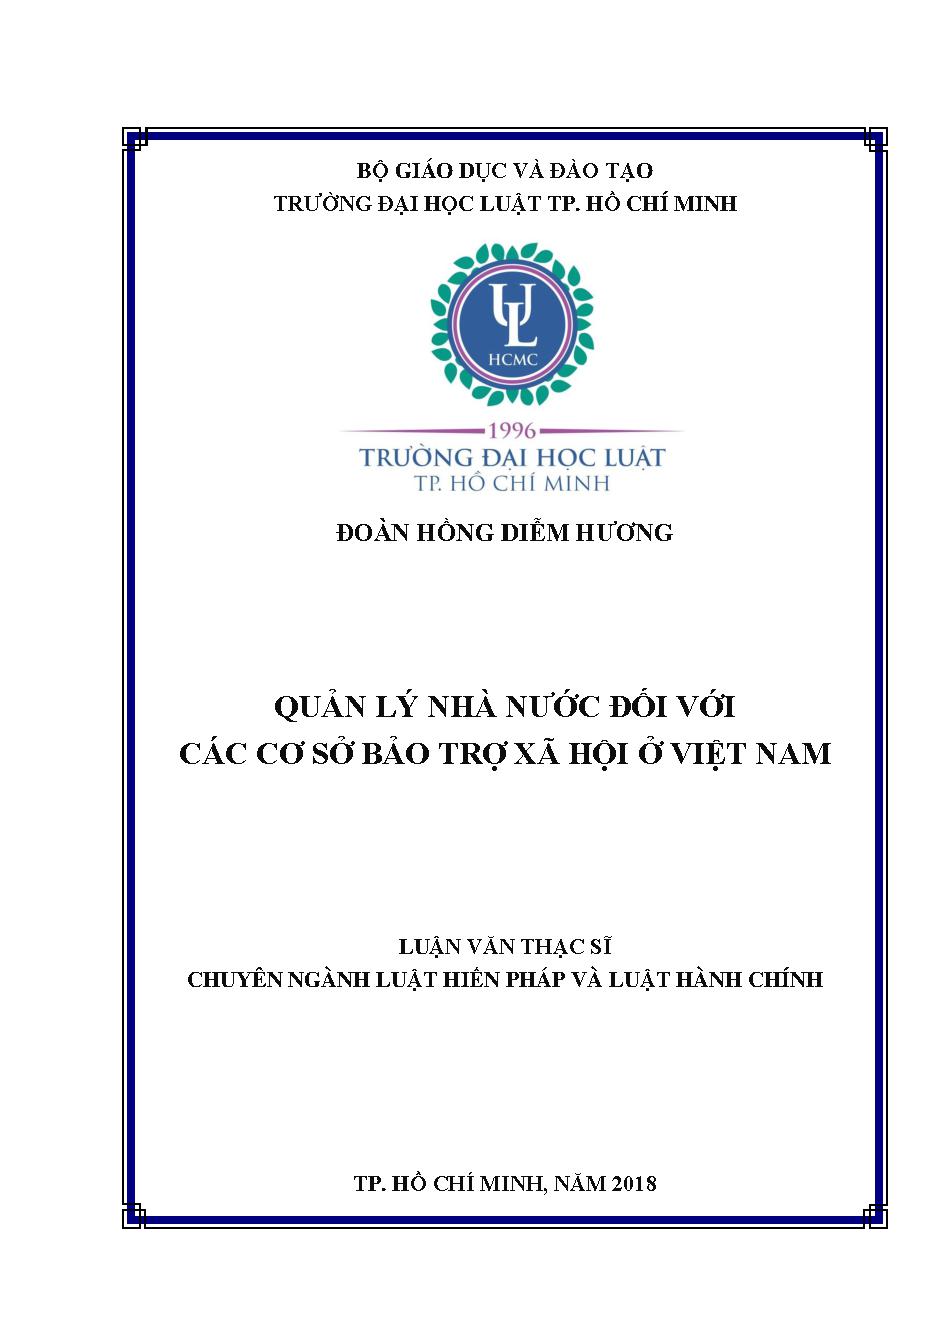 Quản lý nhà nước đối với các cơ sở bảo trợ xã hội ở Việt Nam